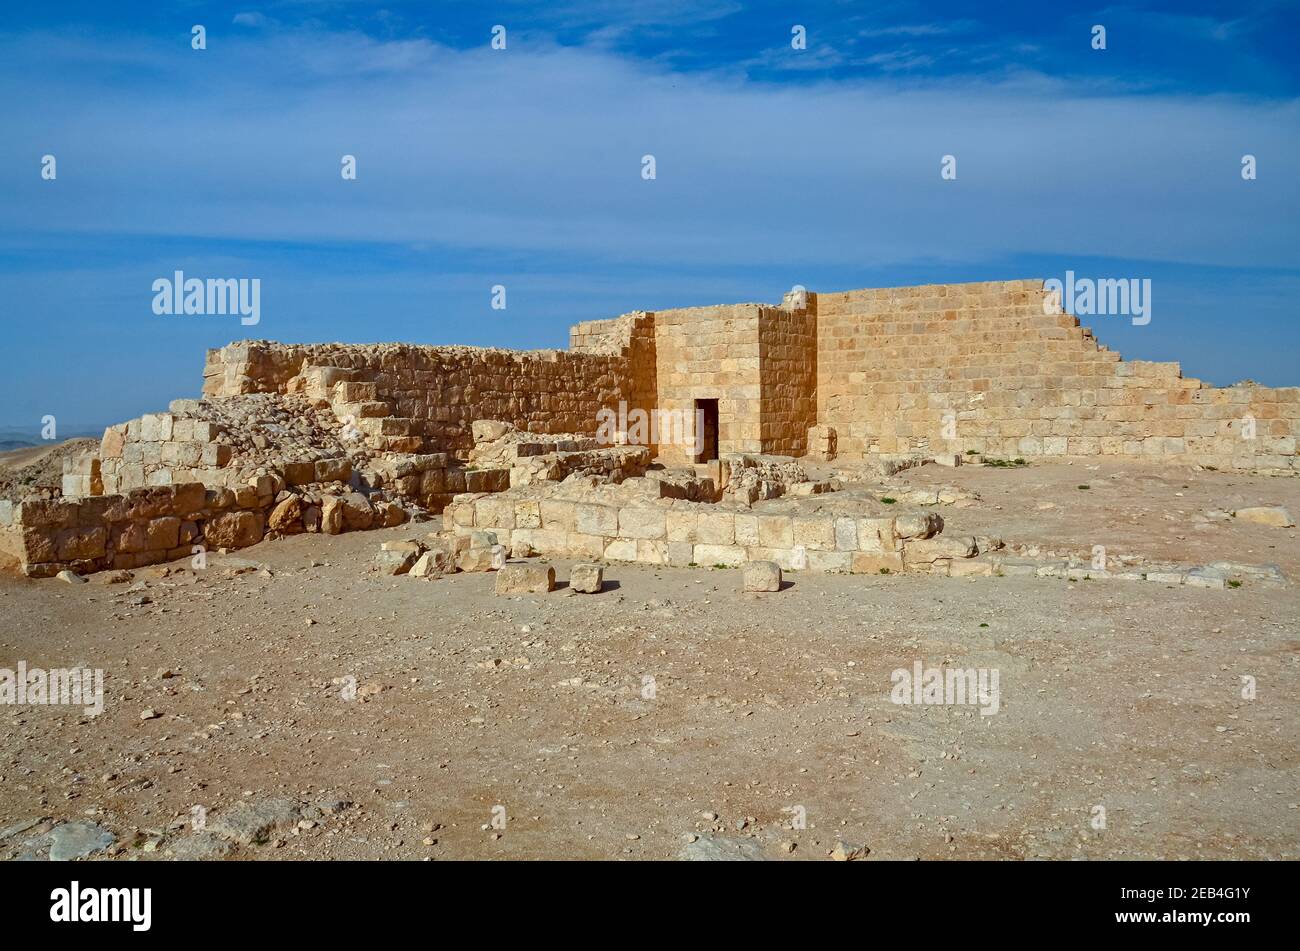 Mamshit, Negev, Israele. Mamshit è il Nabatean città di Memphis. Nel periodo Nabatean, Mamshit è stata importante perché sat sulla rotta da id Foto Stock